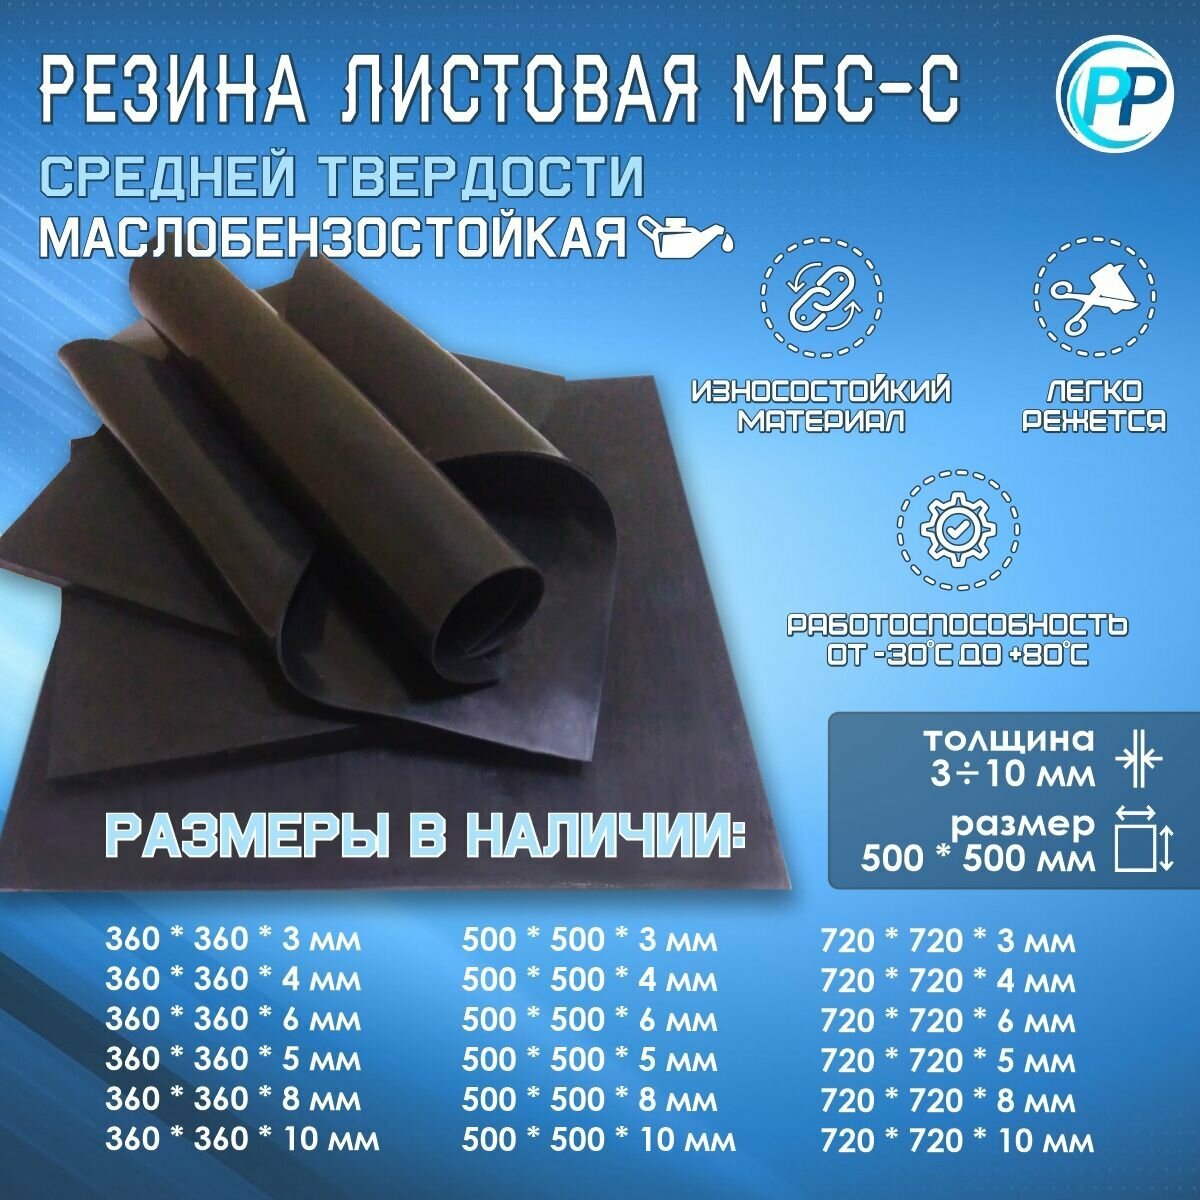 Резина листовая 2-ф 1 МБС (Маслобензостоикая) 3 мм 500х500 мм